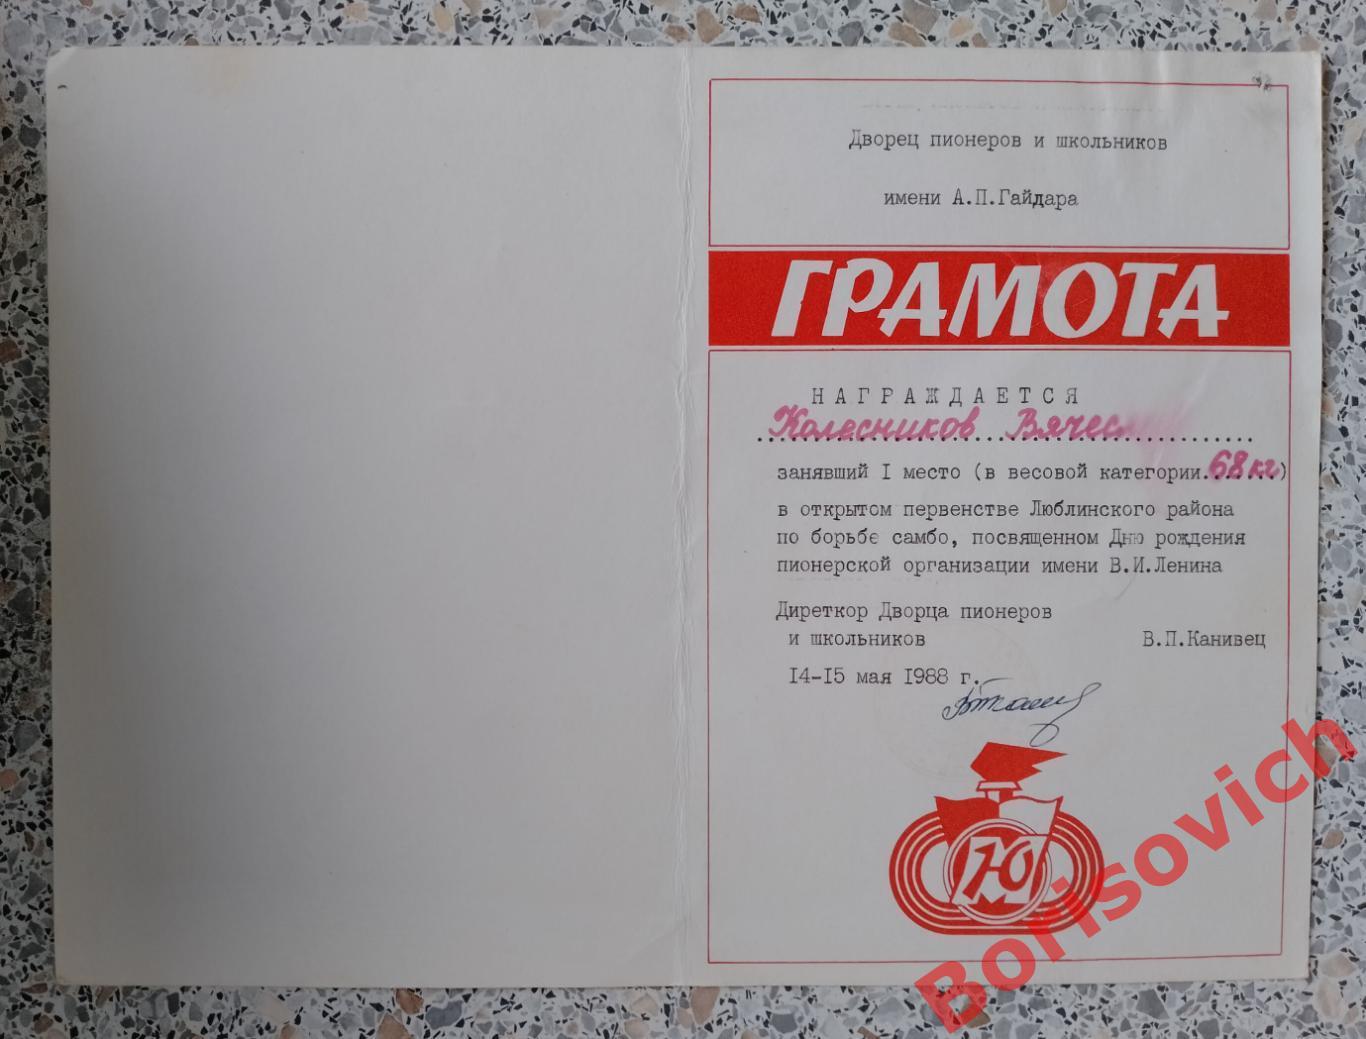 Грамота Самбо 1 место 1988 г Дворец пионеров имени А. П. Гайдара